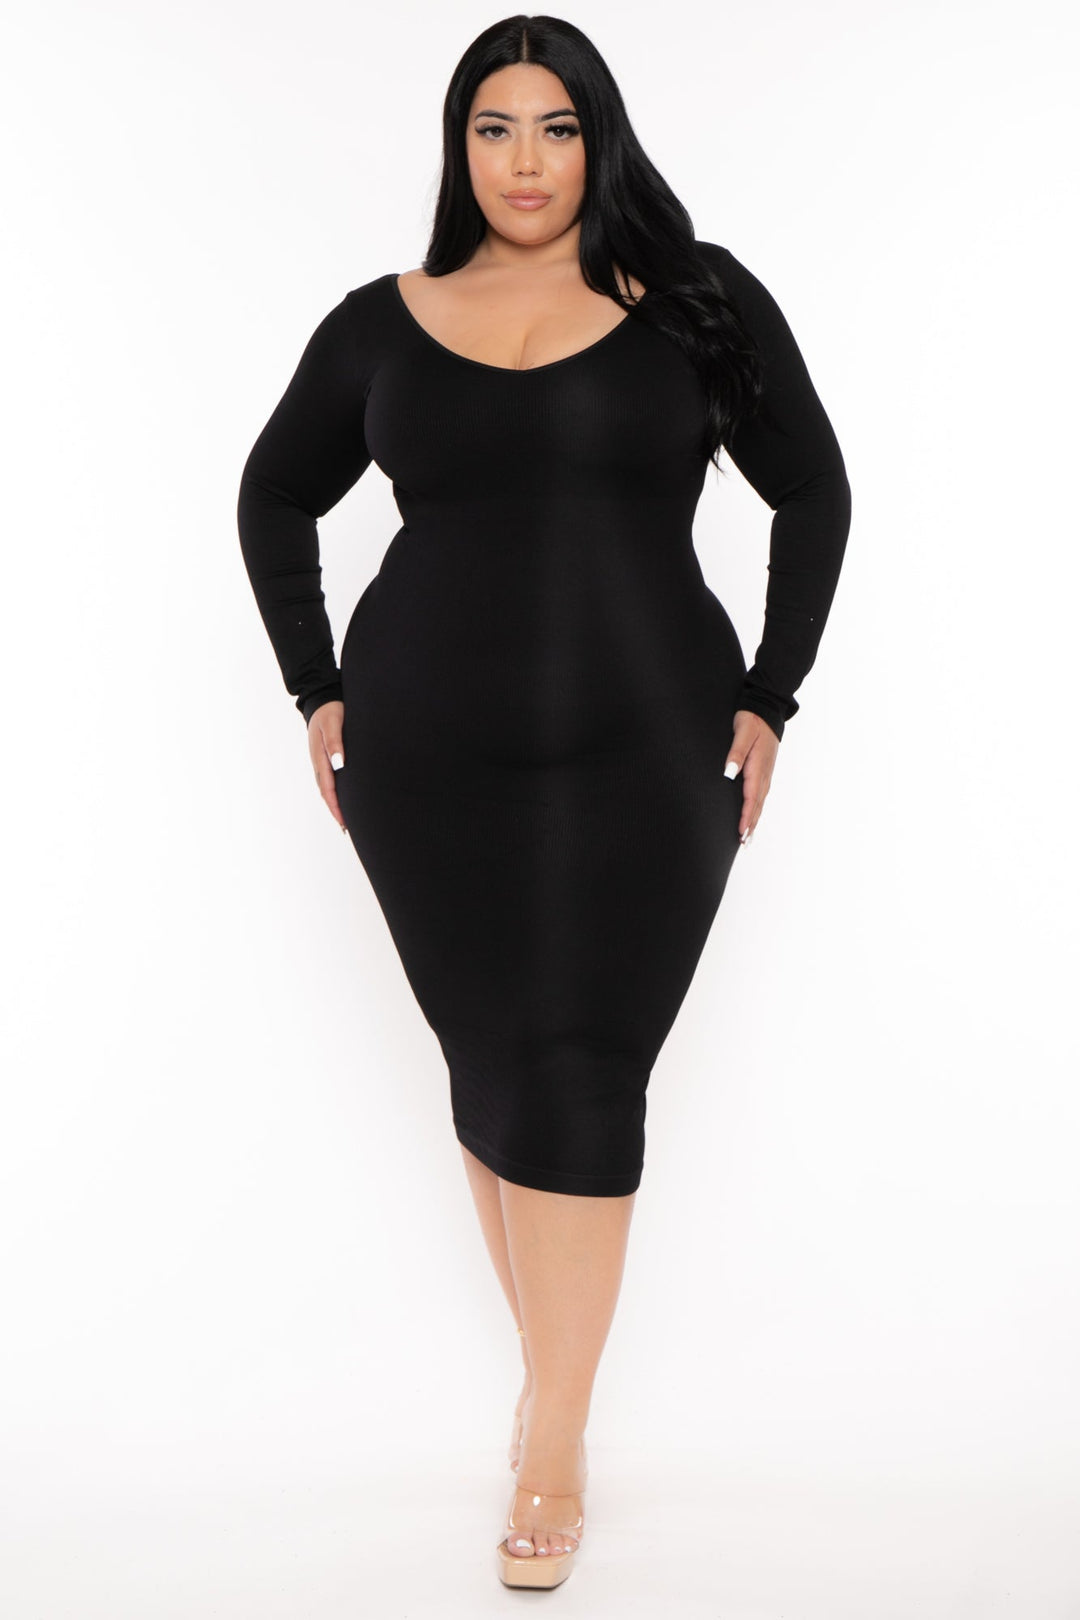 Women's Plus Size Little Black Snatched Dress - Black - Curvy Sense